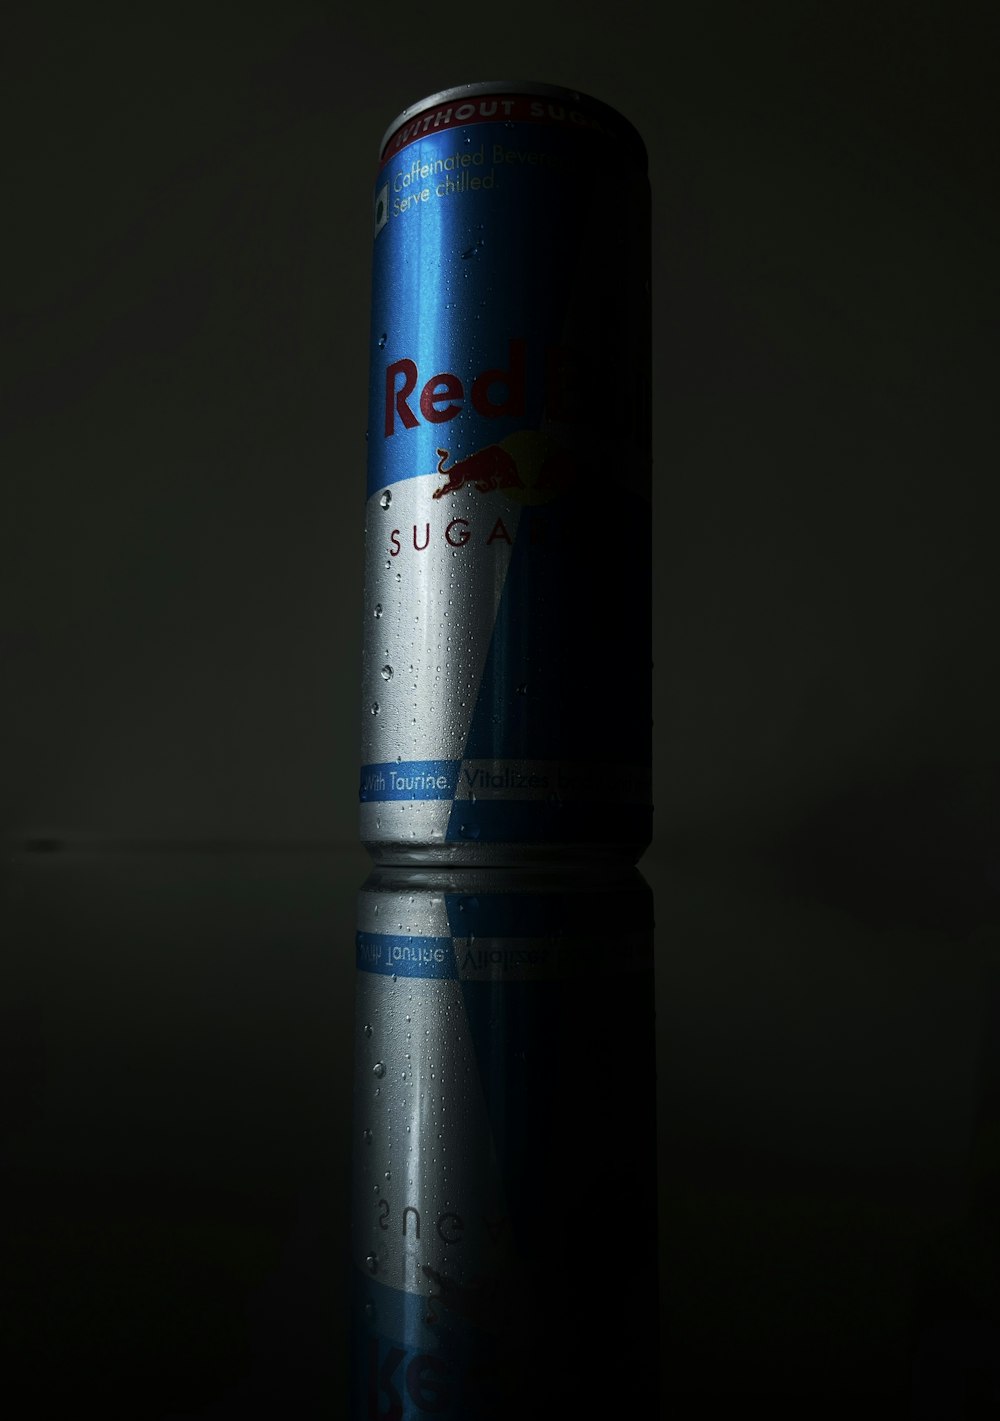 Une canette de Red Bull sur une surface réfléchissante